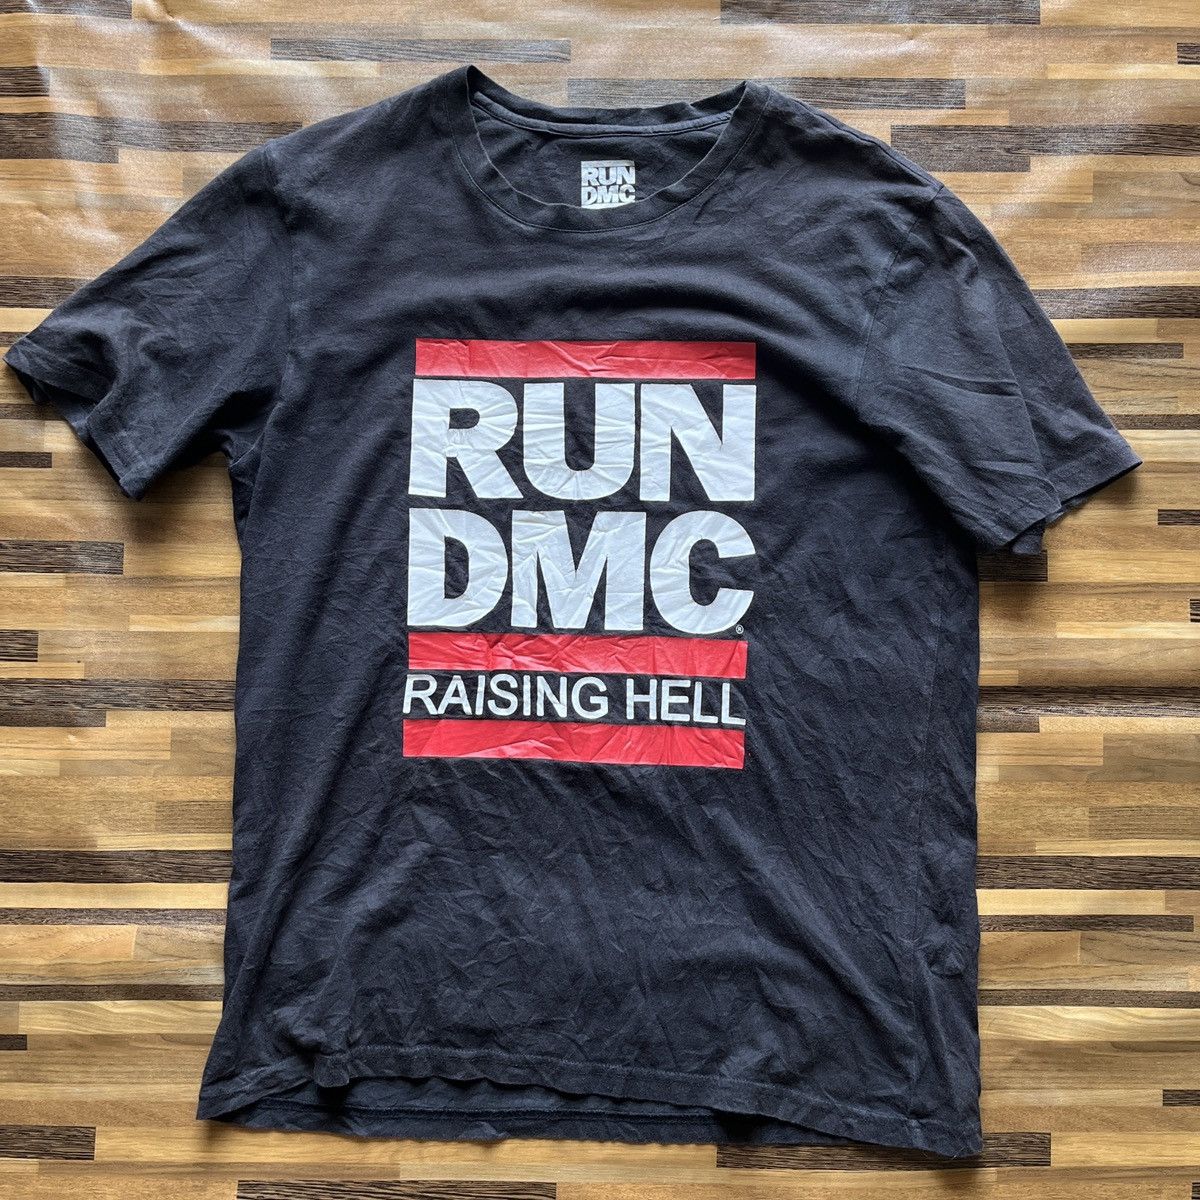 RUN DMC Raising Hell Rap Tees Black Copyright 2015 - 12